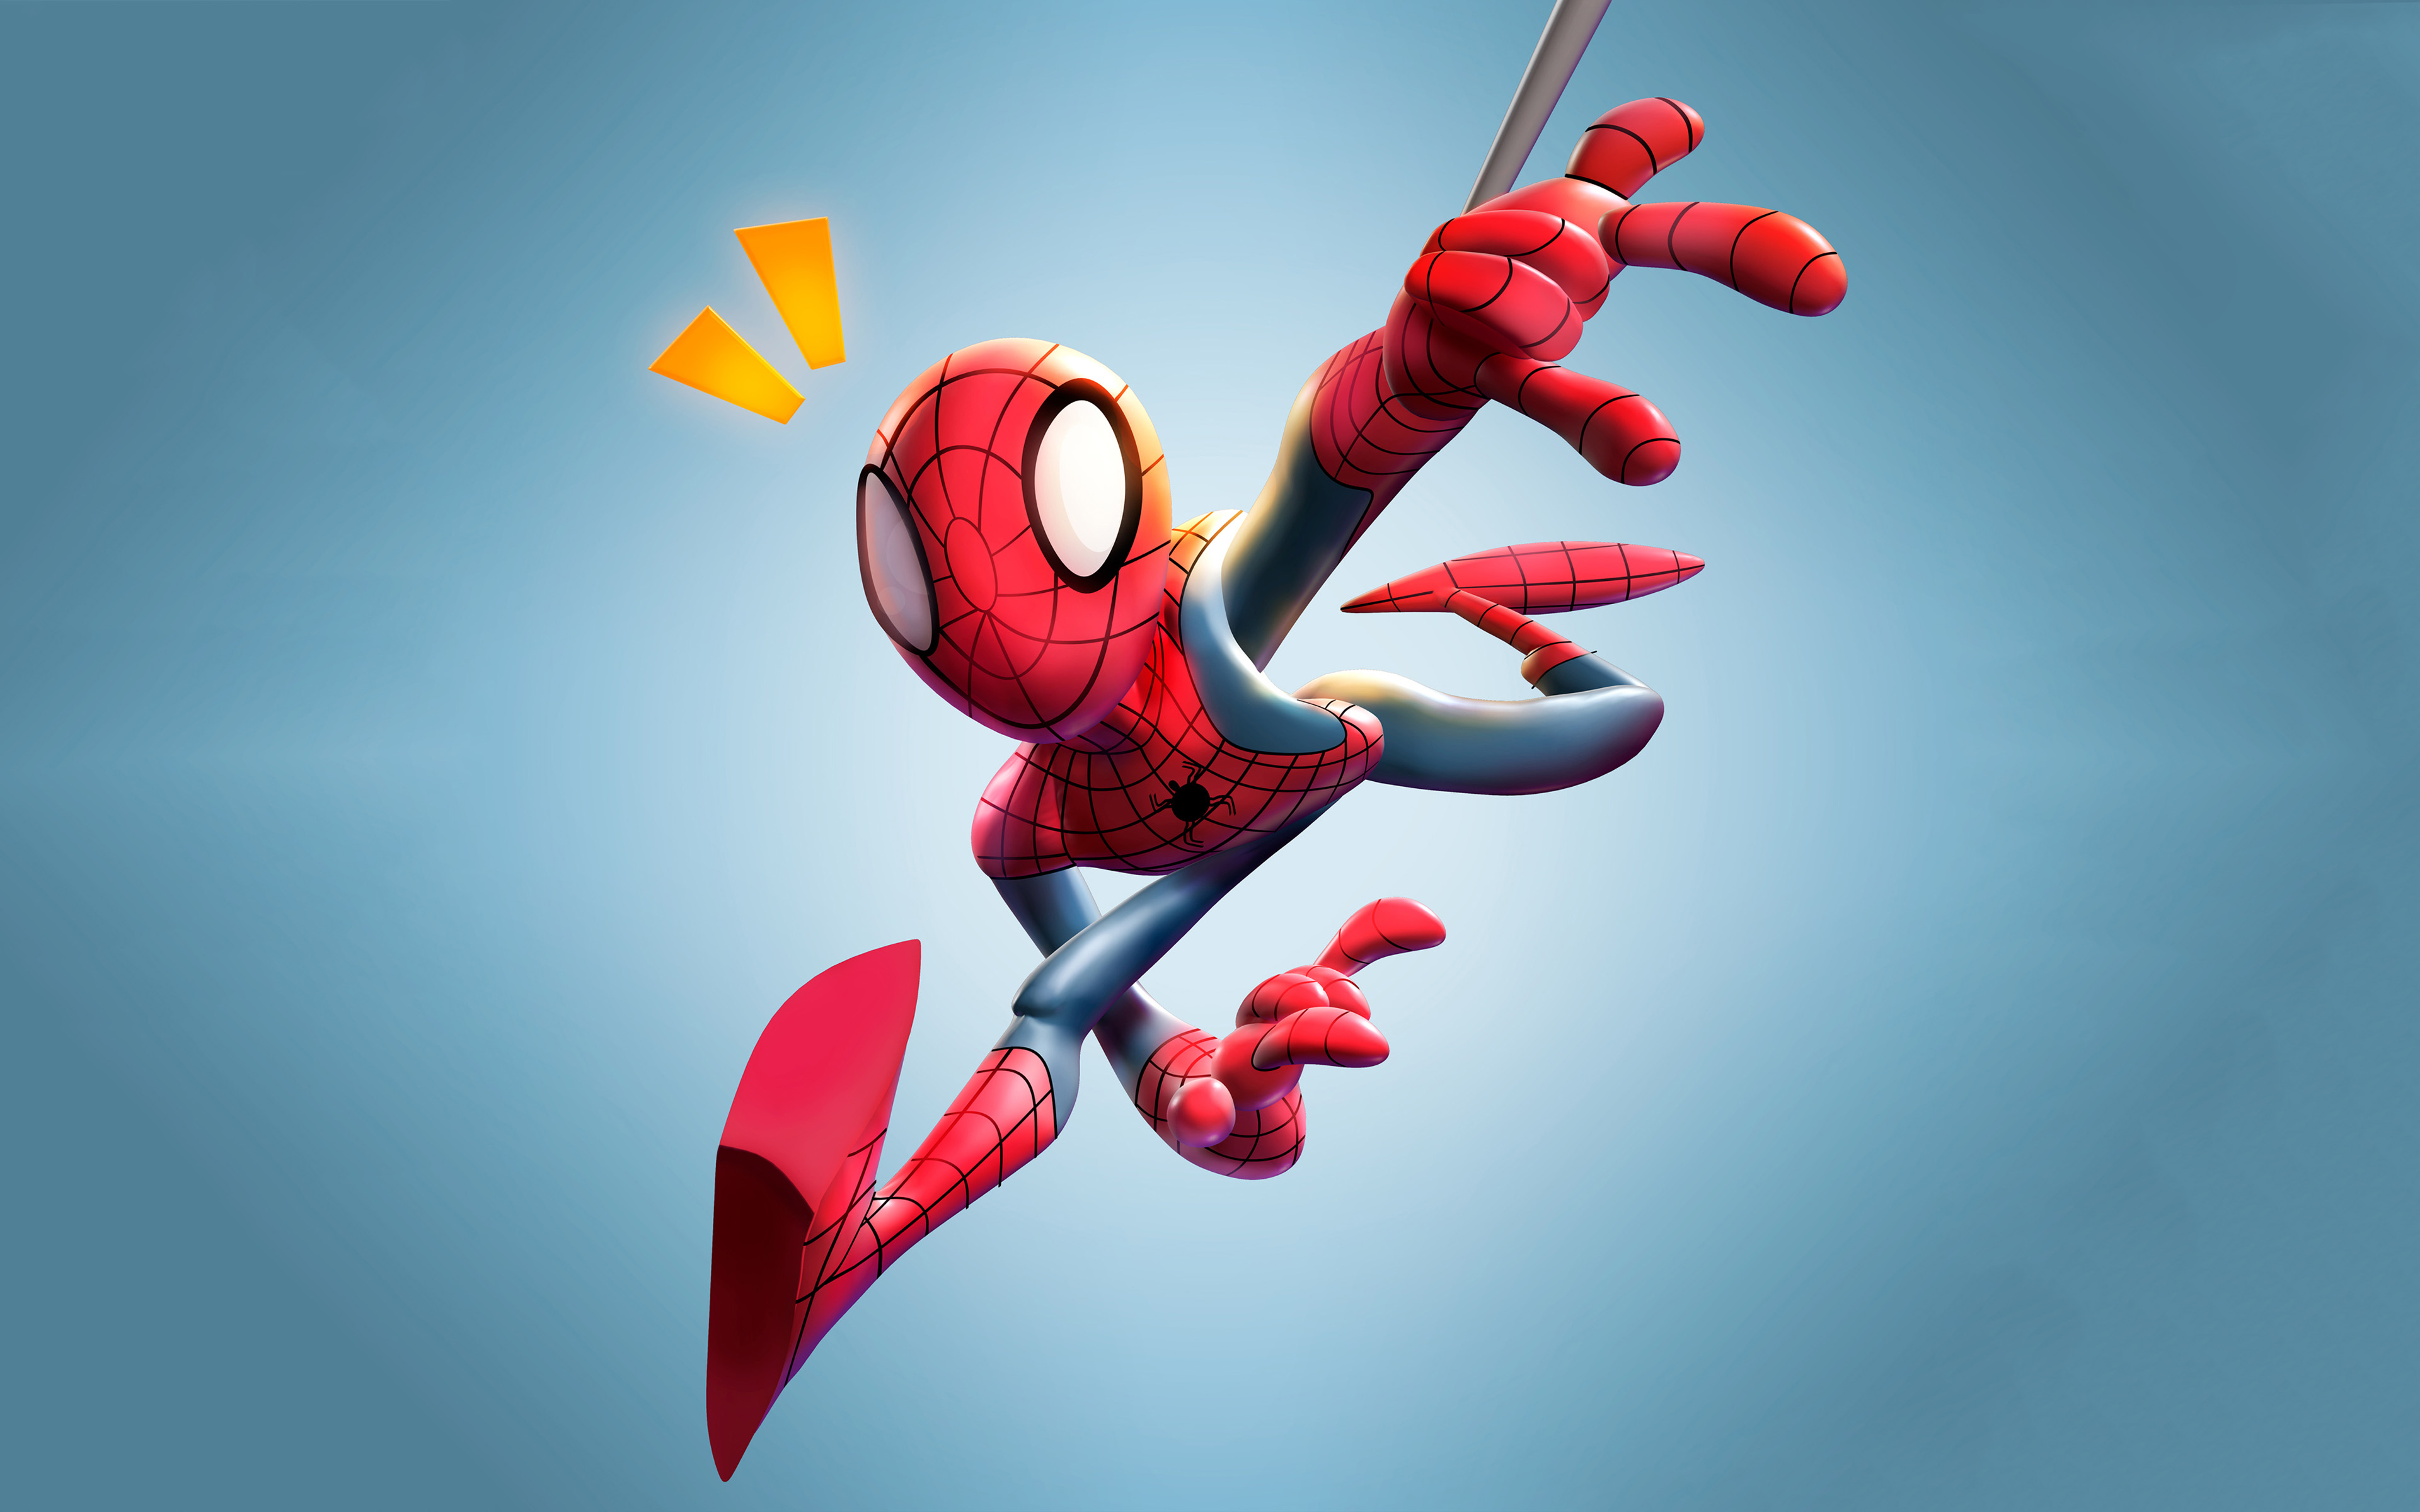 Descargar fondos de pantalla 3D Spiderman, 4K, Spider-Man, fan art,  creatividad, aventura, superhéroes, Spiderman, mínimo, de dibujos animados  de Spiderman monitor con una resolución 3840x2400. Imagenes de escritorio